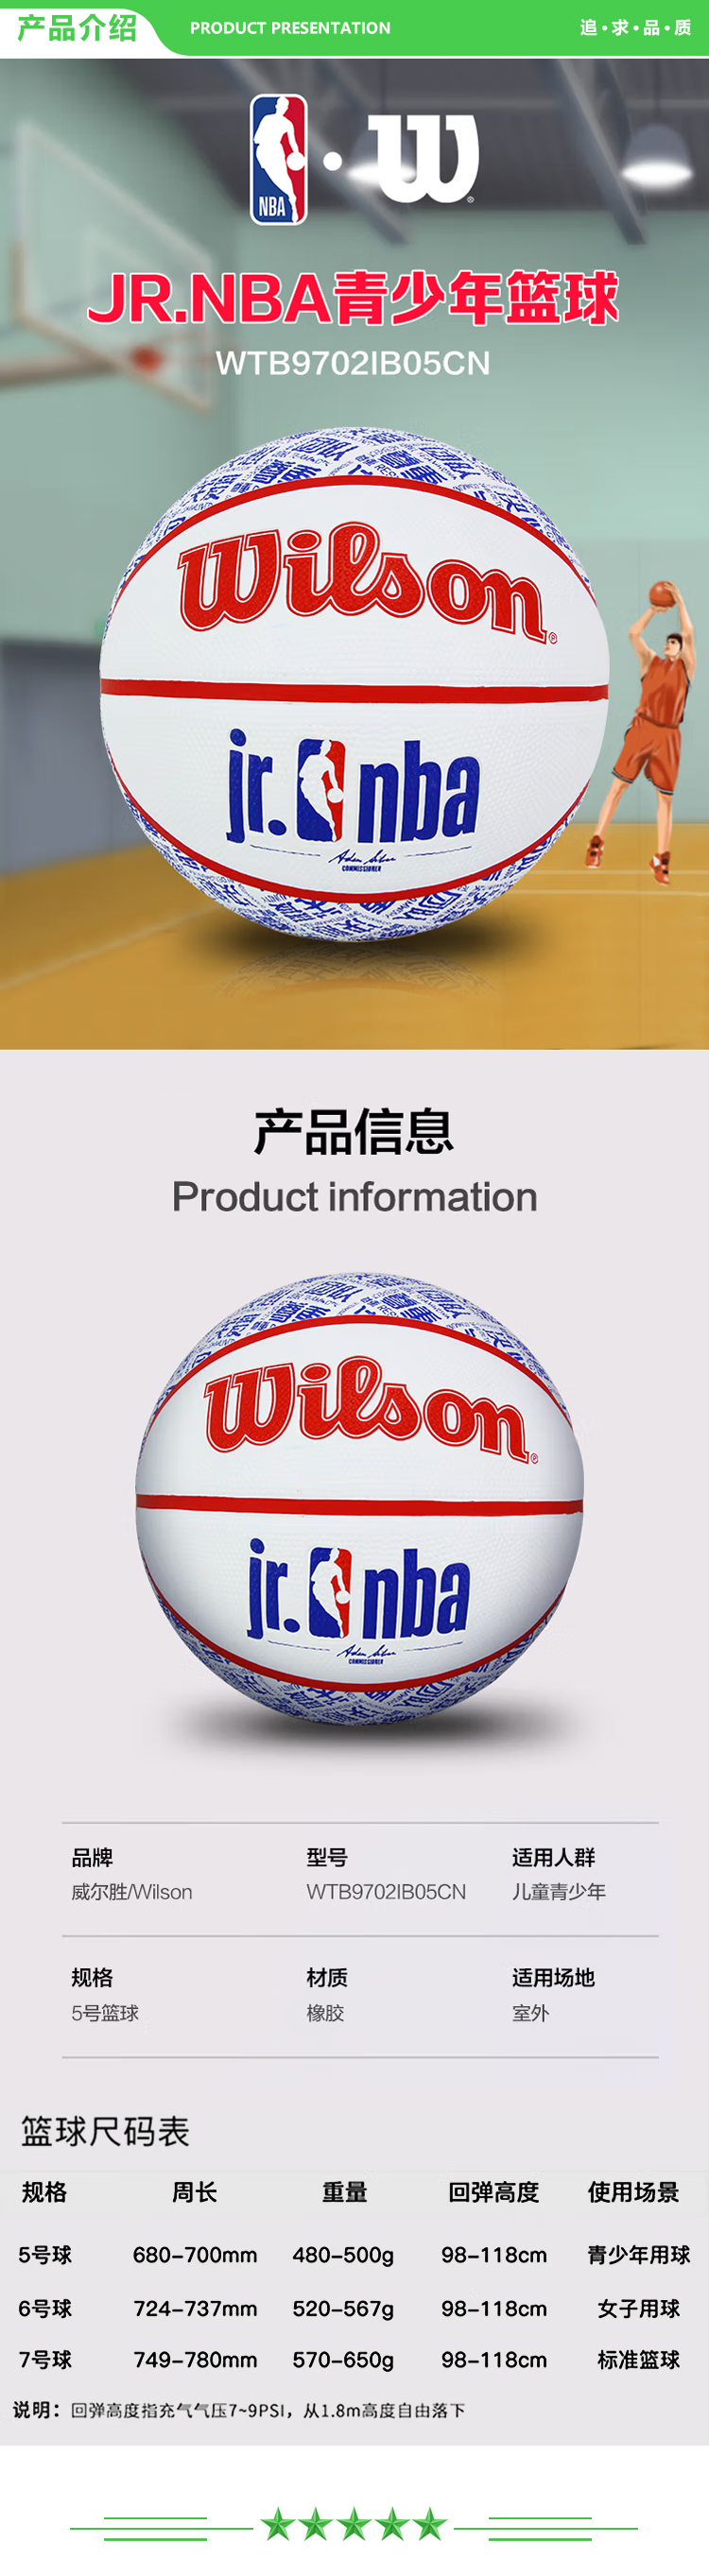 威尔胜 Wilson WTB9702IB05CN JR.NBA 5号橡胶篮球儿童青少年训练比赛耐磨室外篮球  .jpg